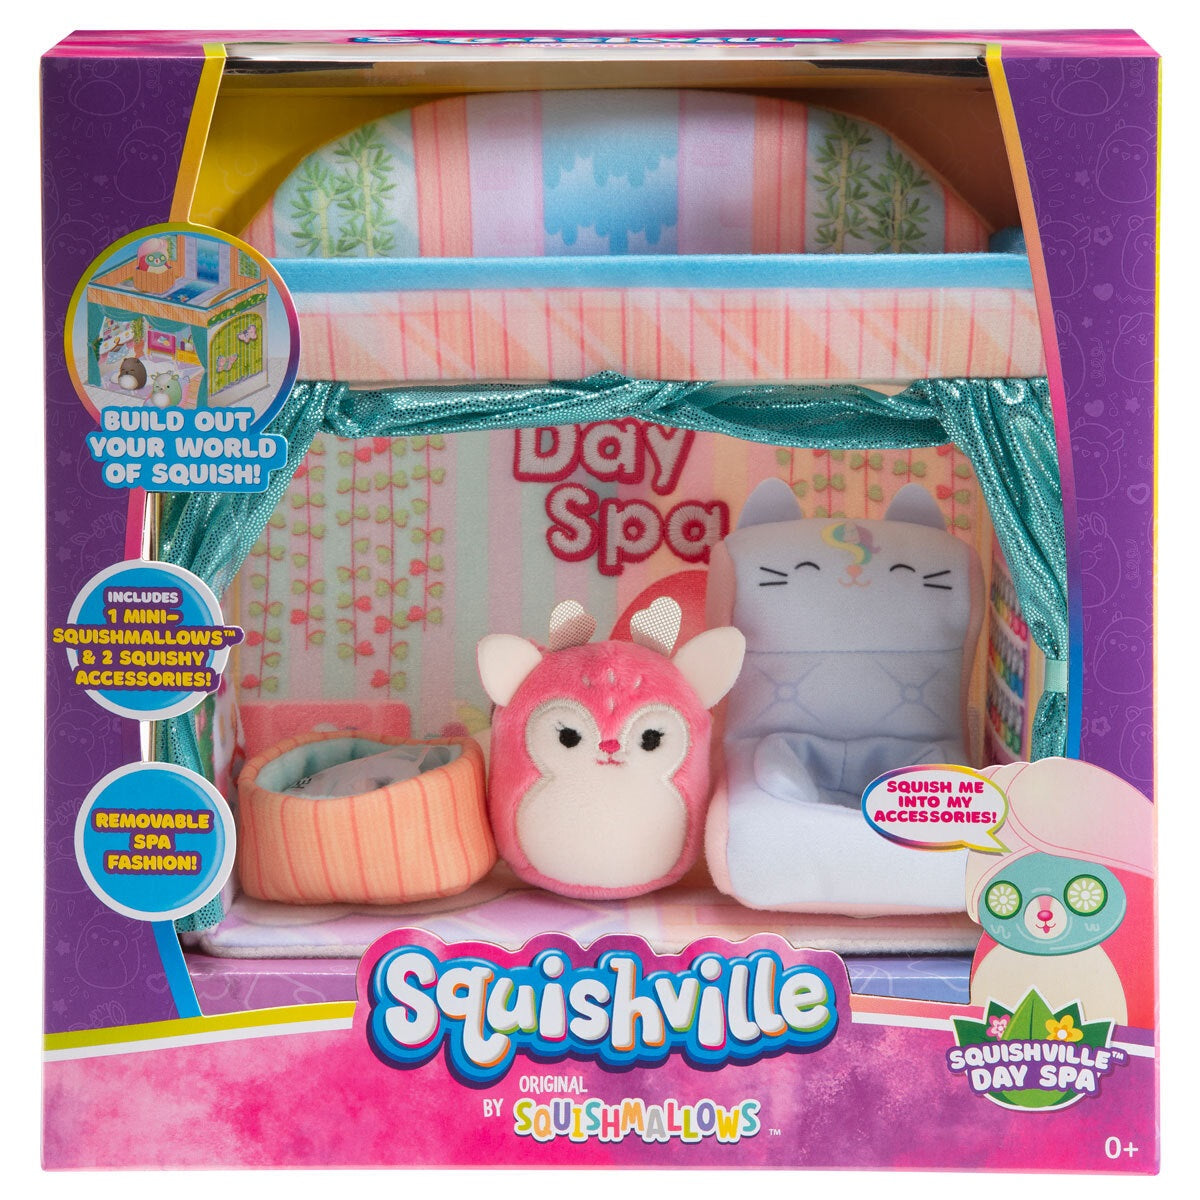 Squishville 2' Mini Squishmallows Play Scene - Squishville Day Spa